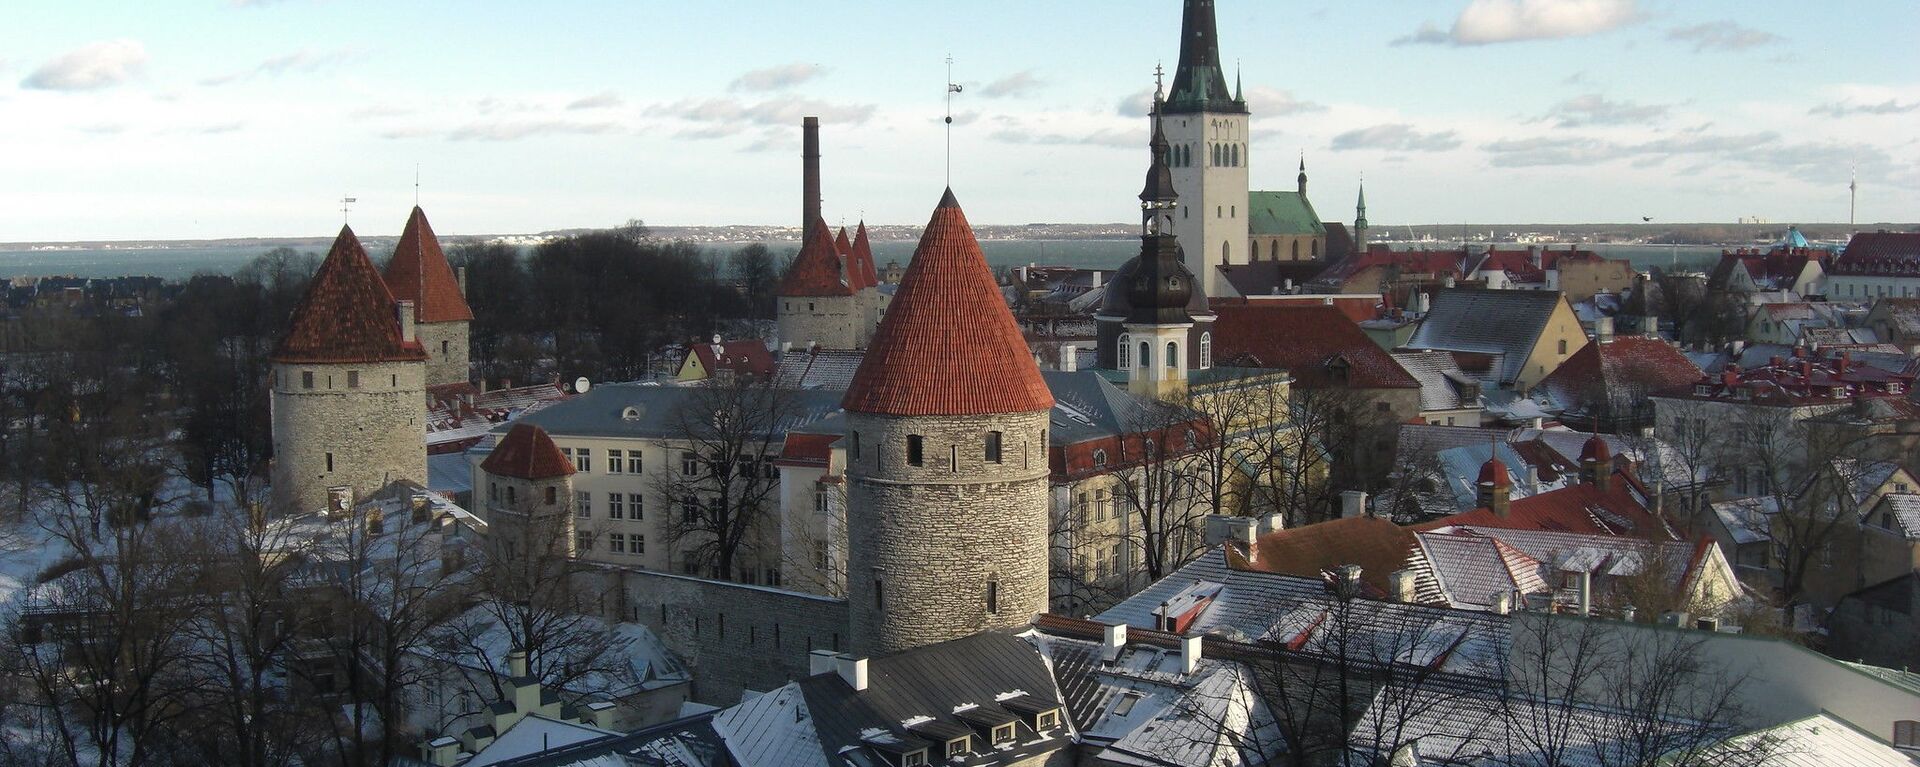 Таллин, Эстония - Sputnik Литва, 1920, 28.02.2021